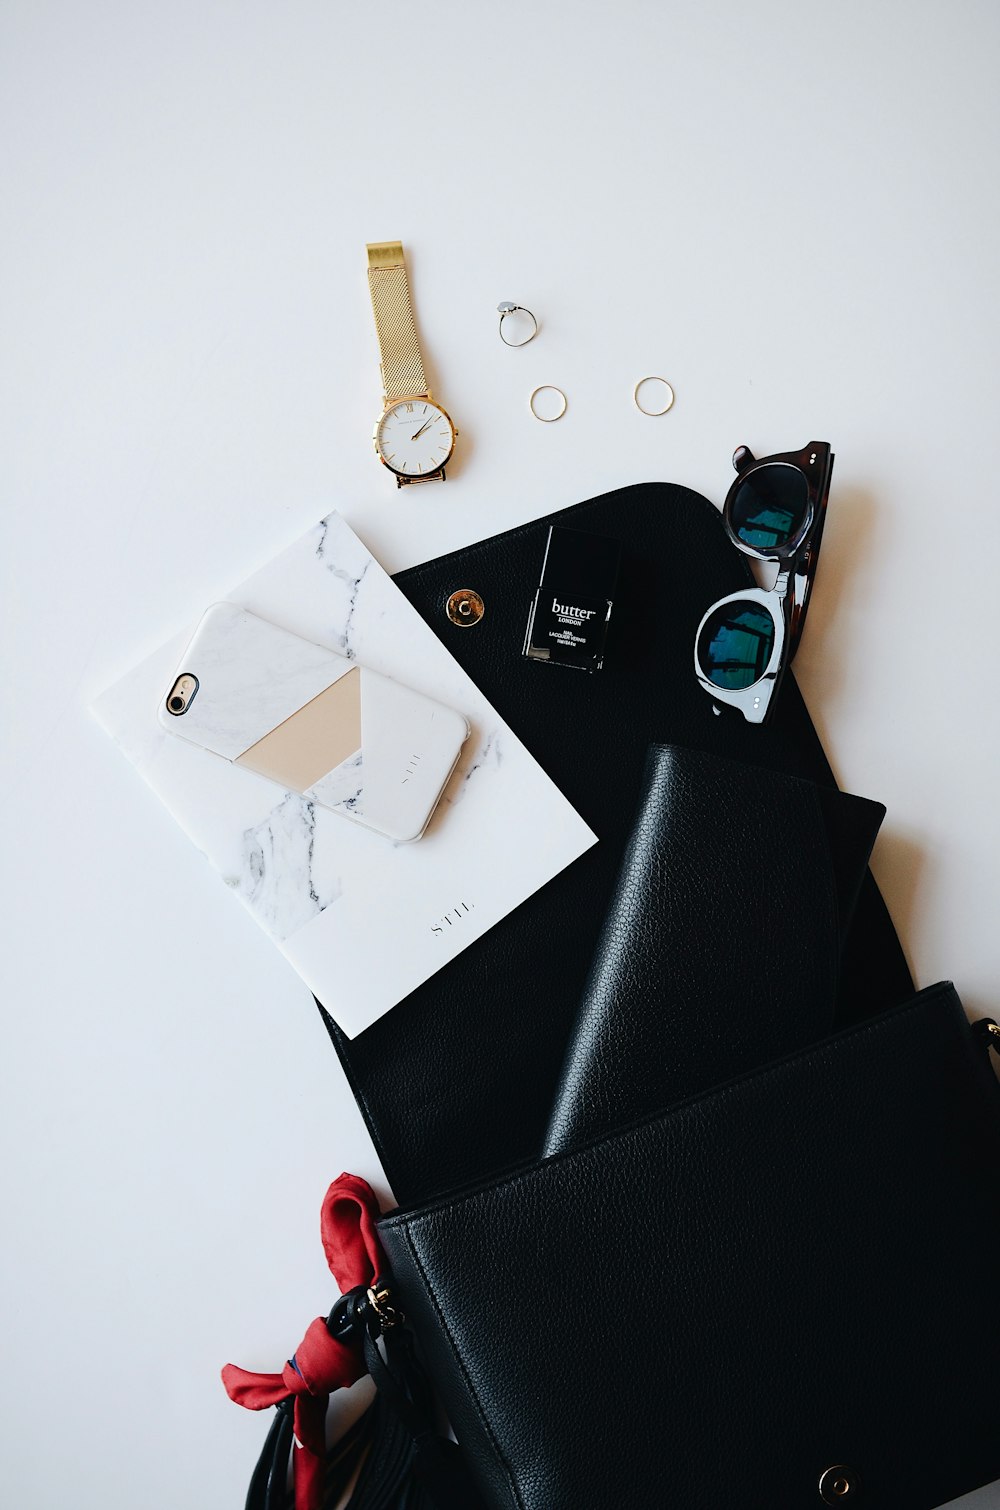 금색 시계, 흰색 스마트 폰, 가죽 지갑 및 안경과 같은 임의의 항목으로 덮인 검은 색 클립 보드.